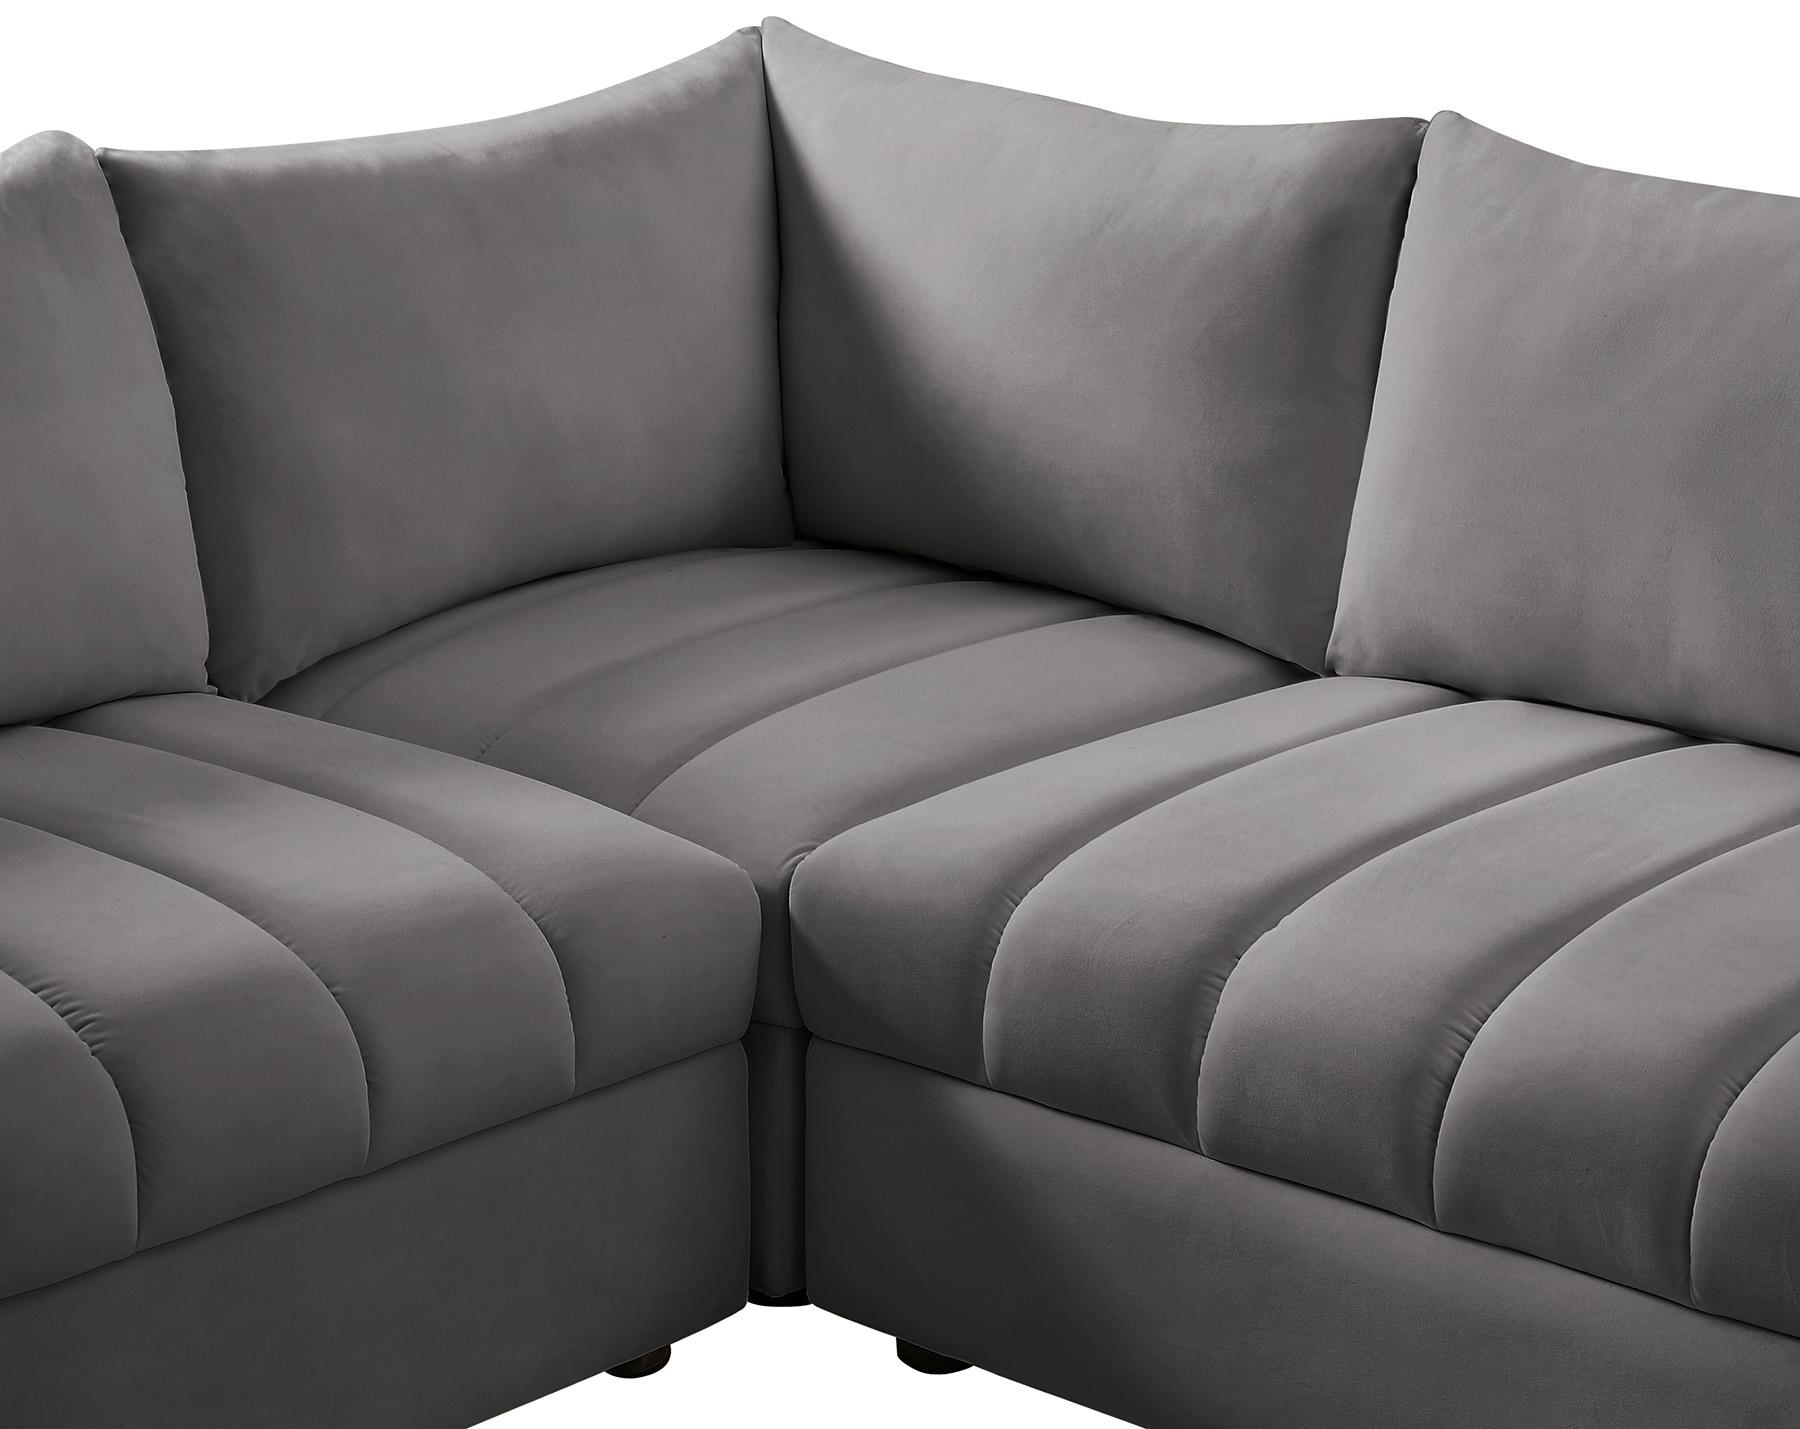 

    
649Grey-Sec7A Meridian Furniture Modular Sectional Sofa
